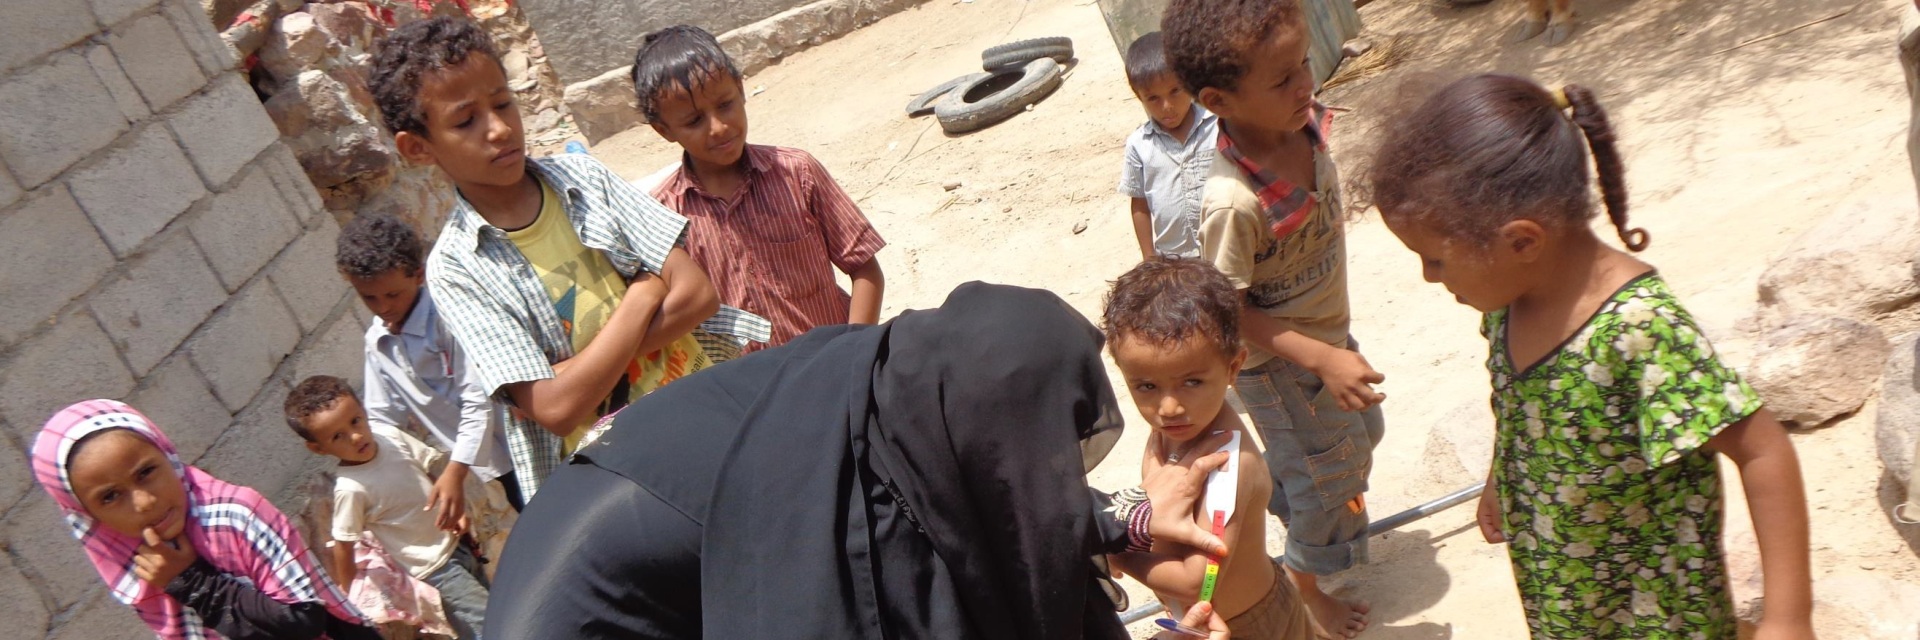 Kinder im Jemen werden untersucht